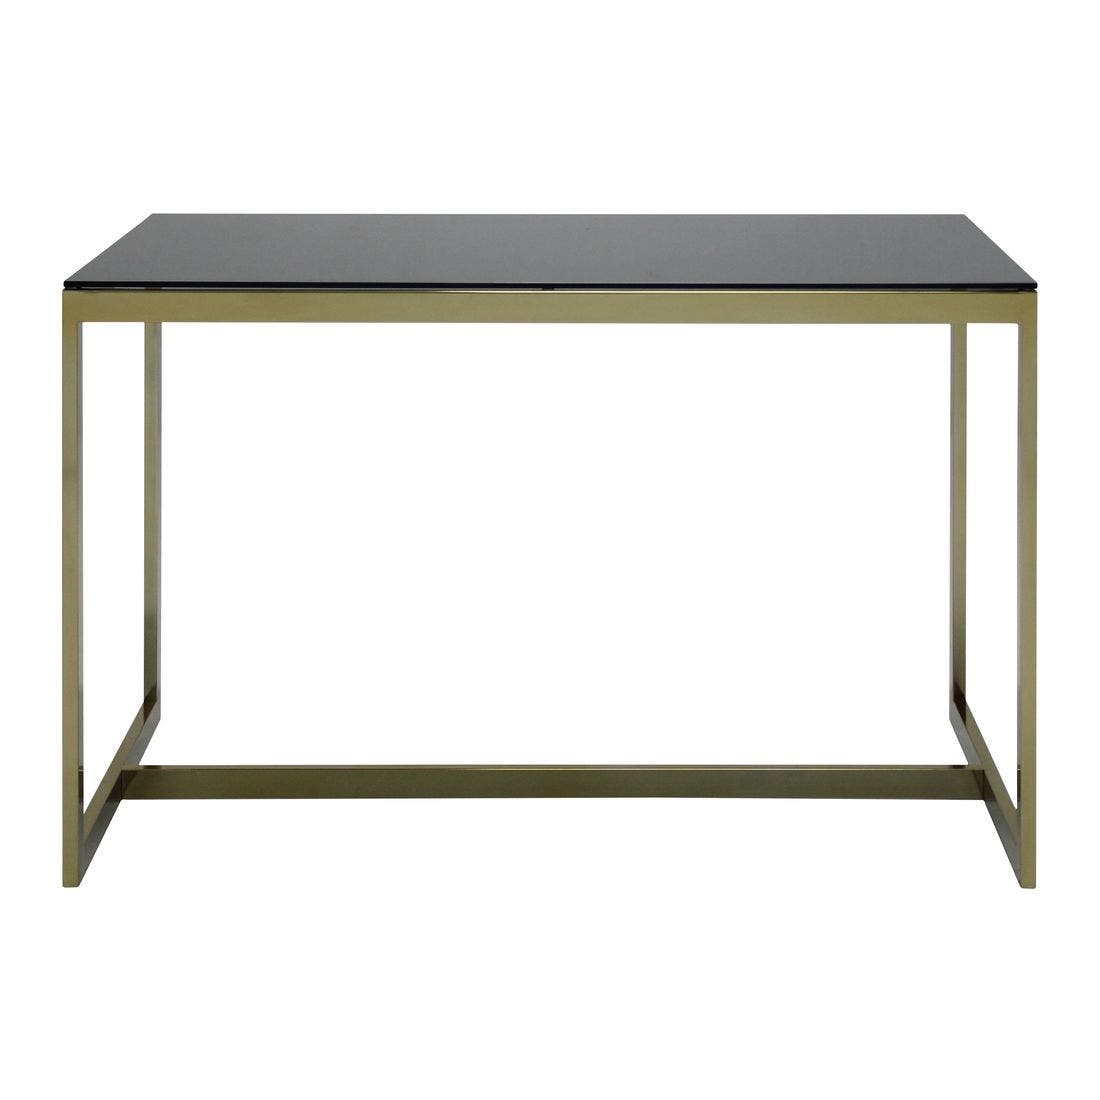 โต๊ะทานอาหาร โต๊ะอาหารขาเหล็กท๊อปกระจก รุ่น Raymond สีสีดำ-SB Design Square